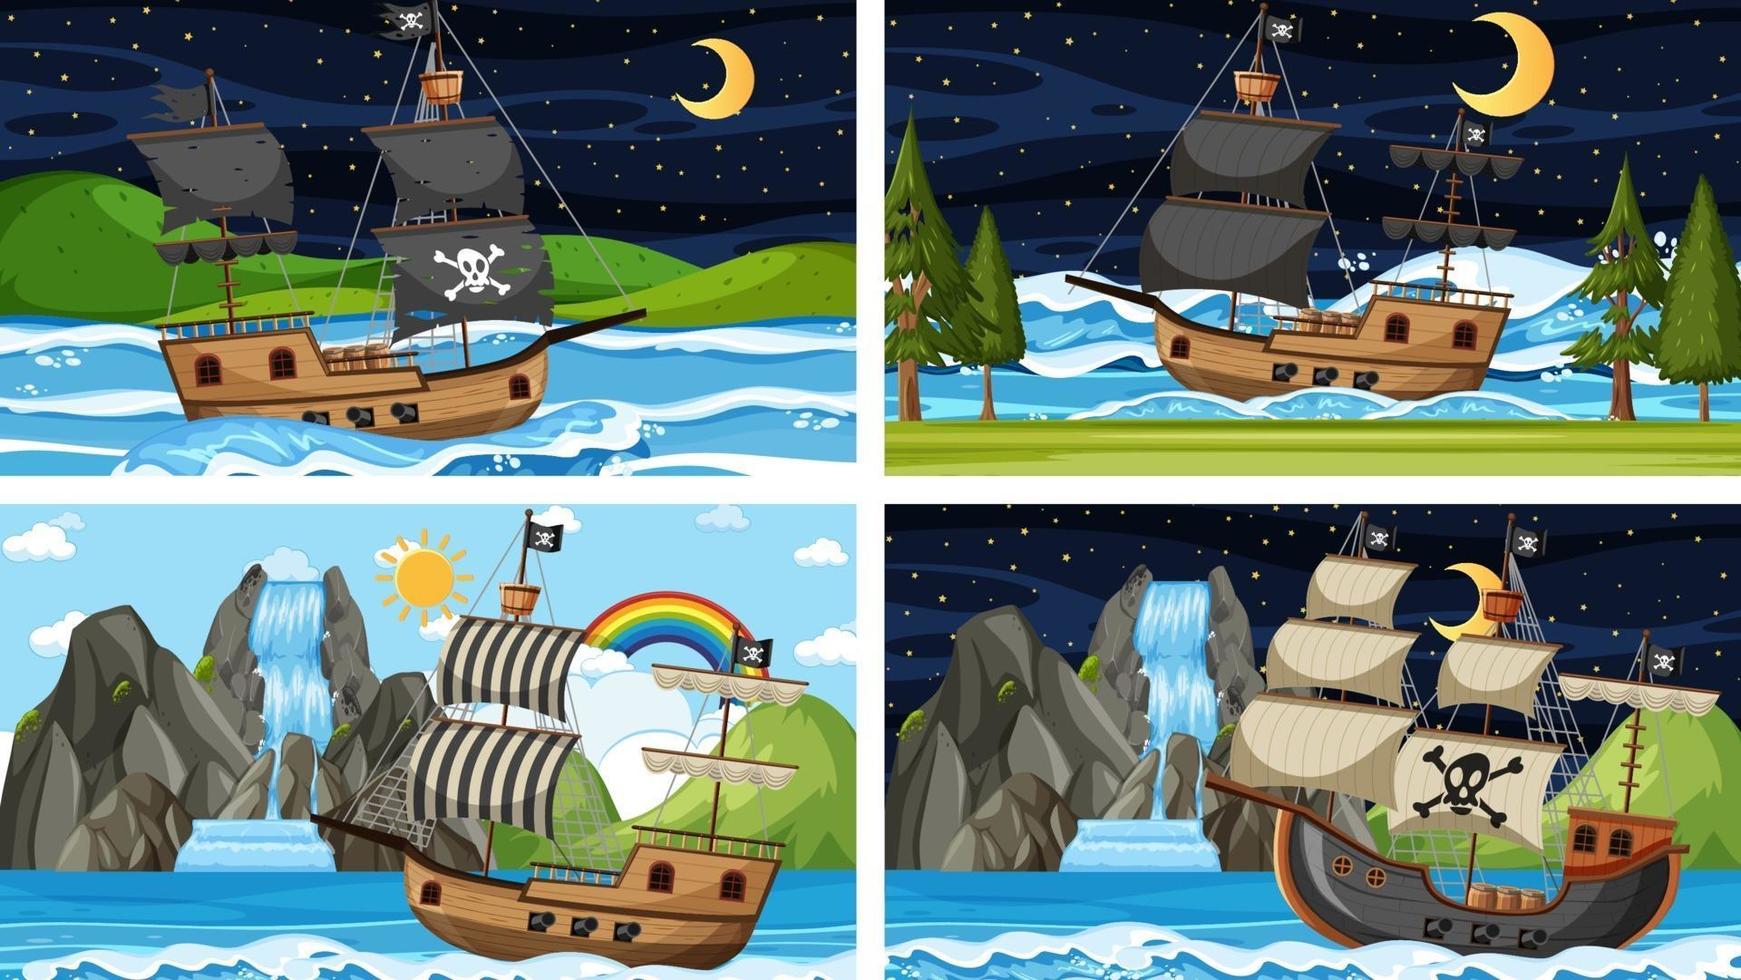 set di oceano con nave pirata in scene di momenti diversi in stile cartone animato vettore